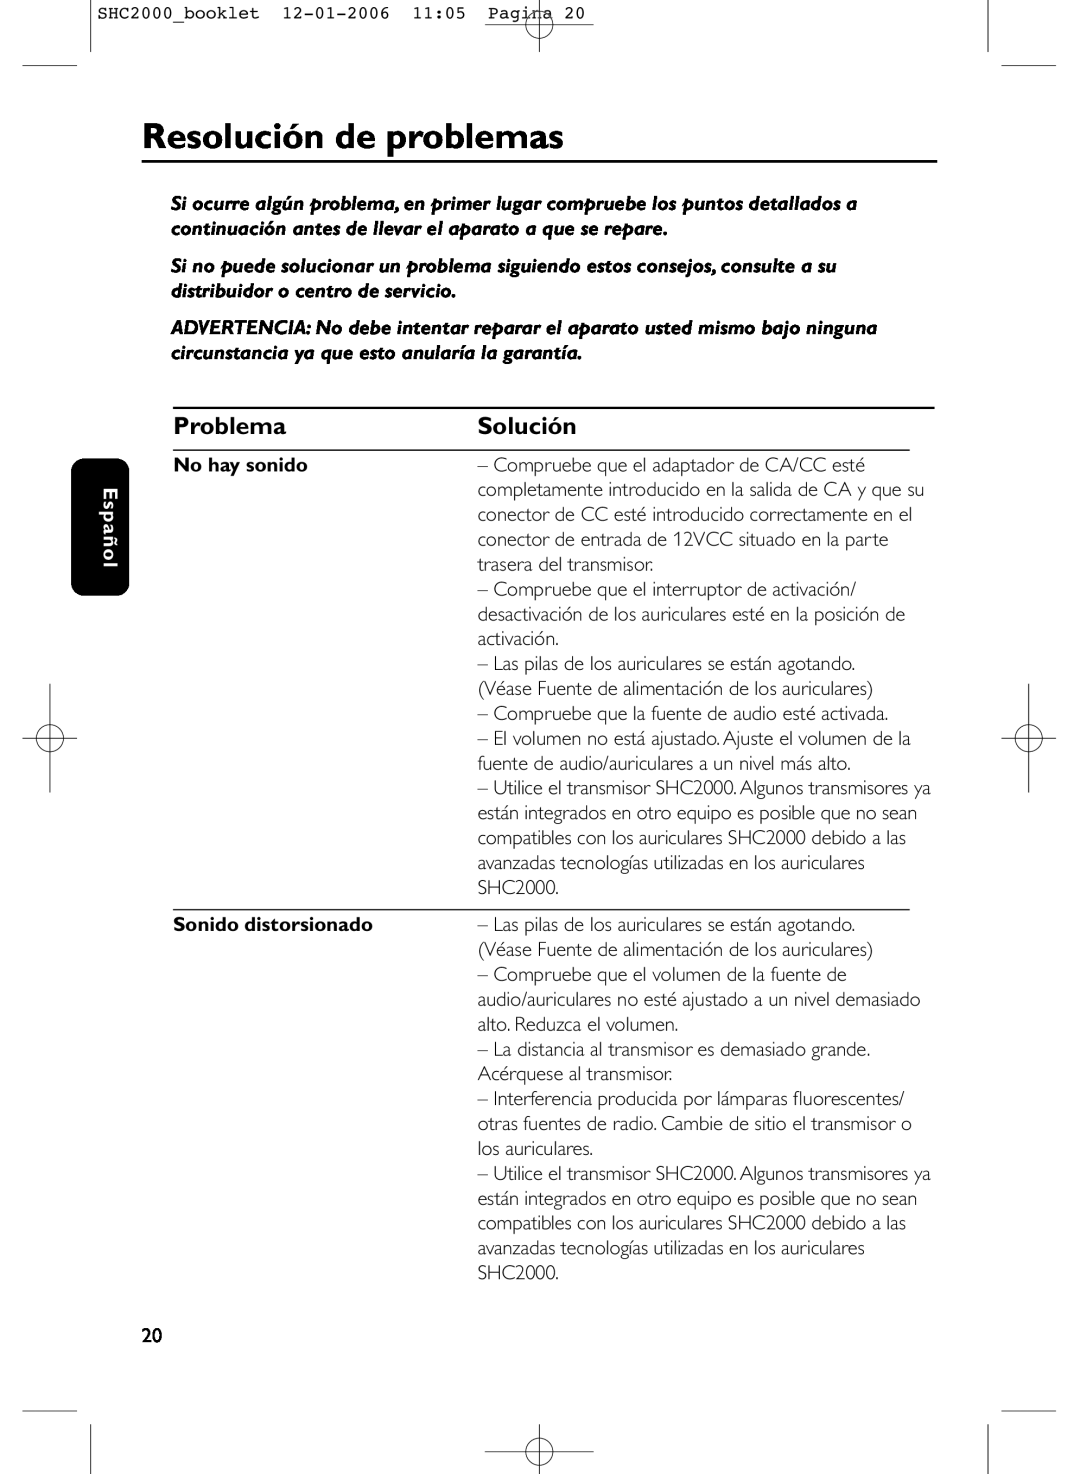 Philips SHC2000 manual Resolución de problemas, Problema, Solución, Español, No hay sonido, Sonido distorsionado 